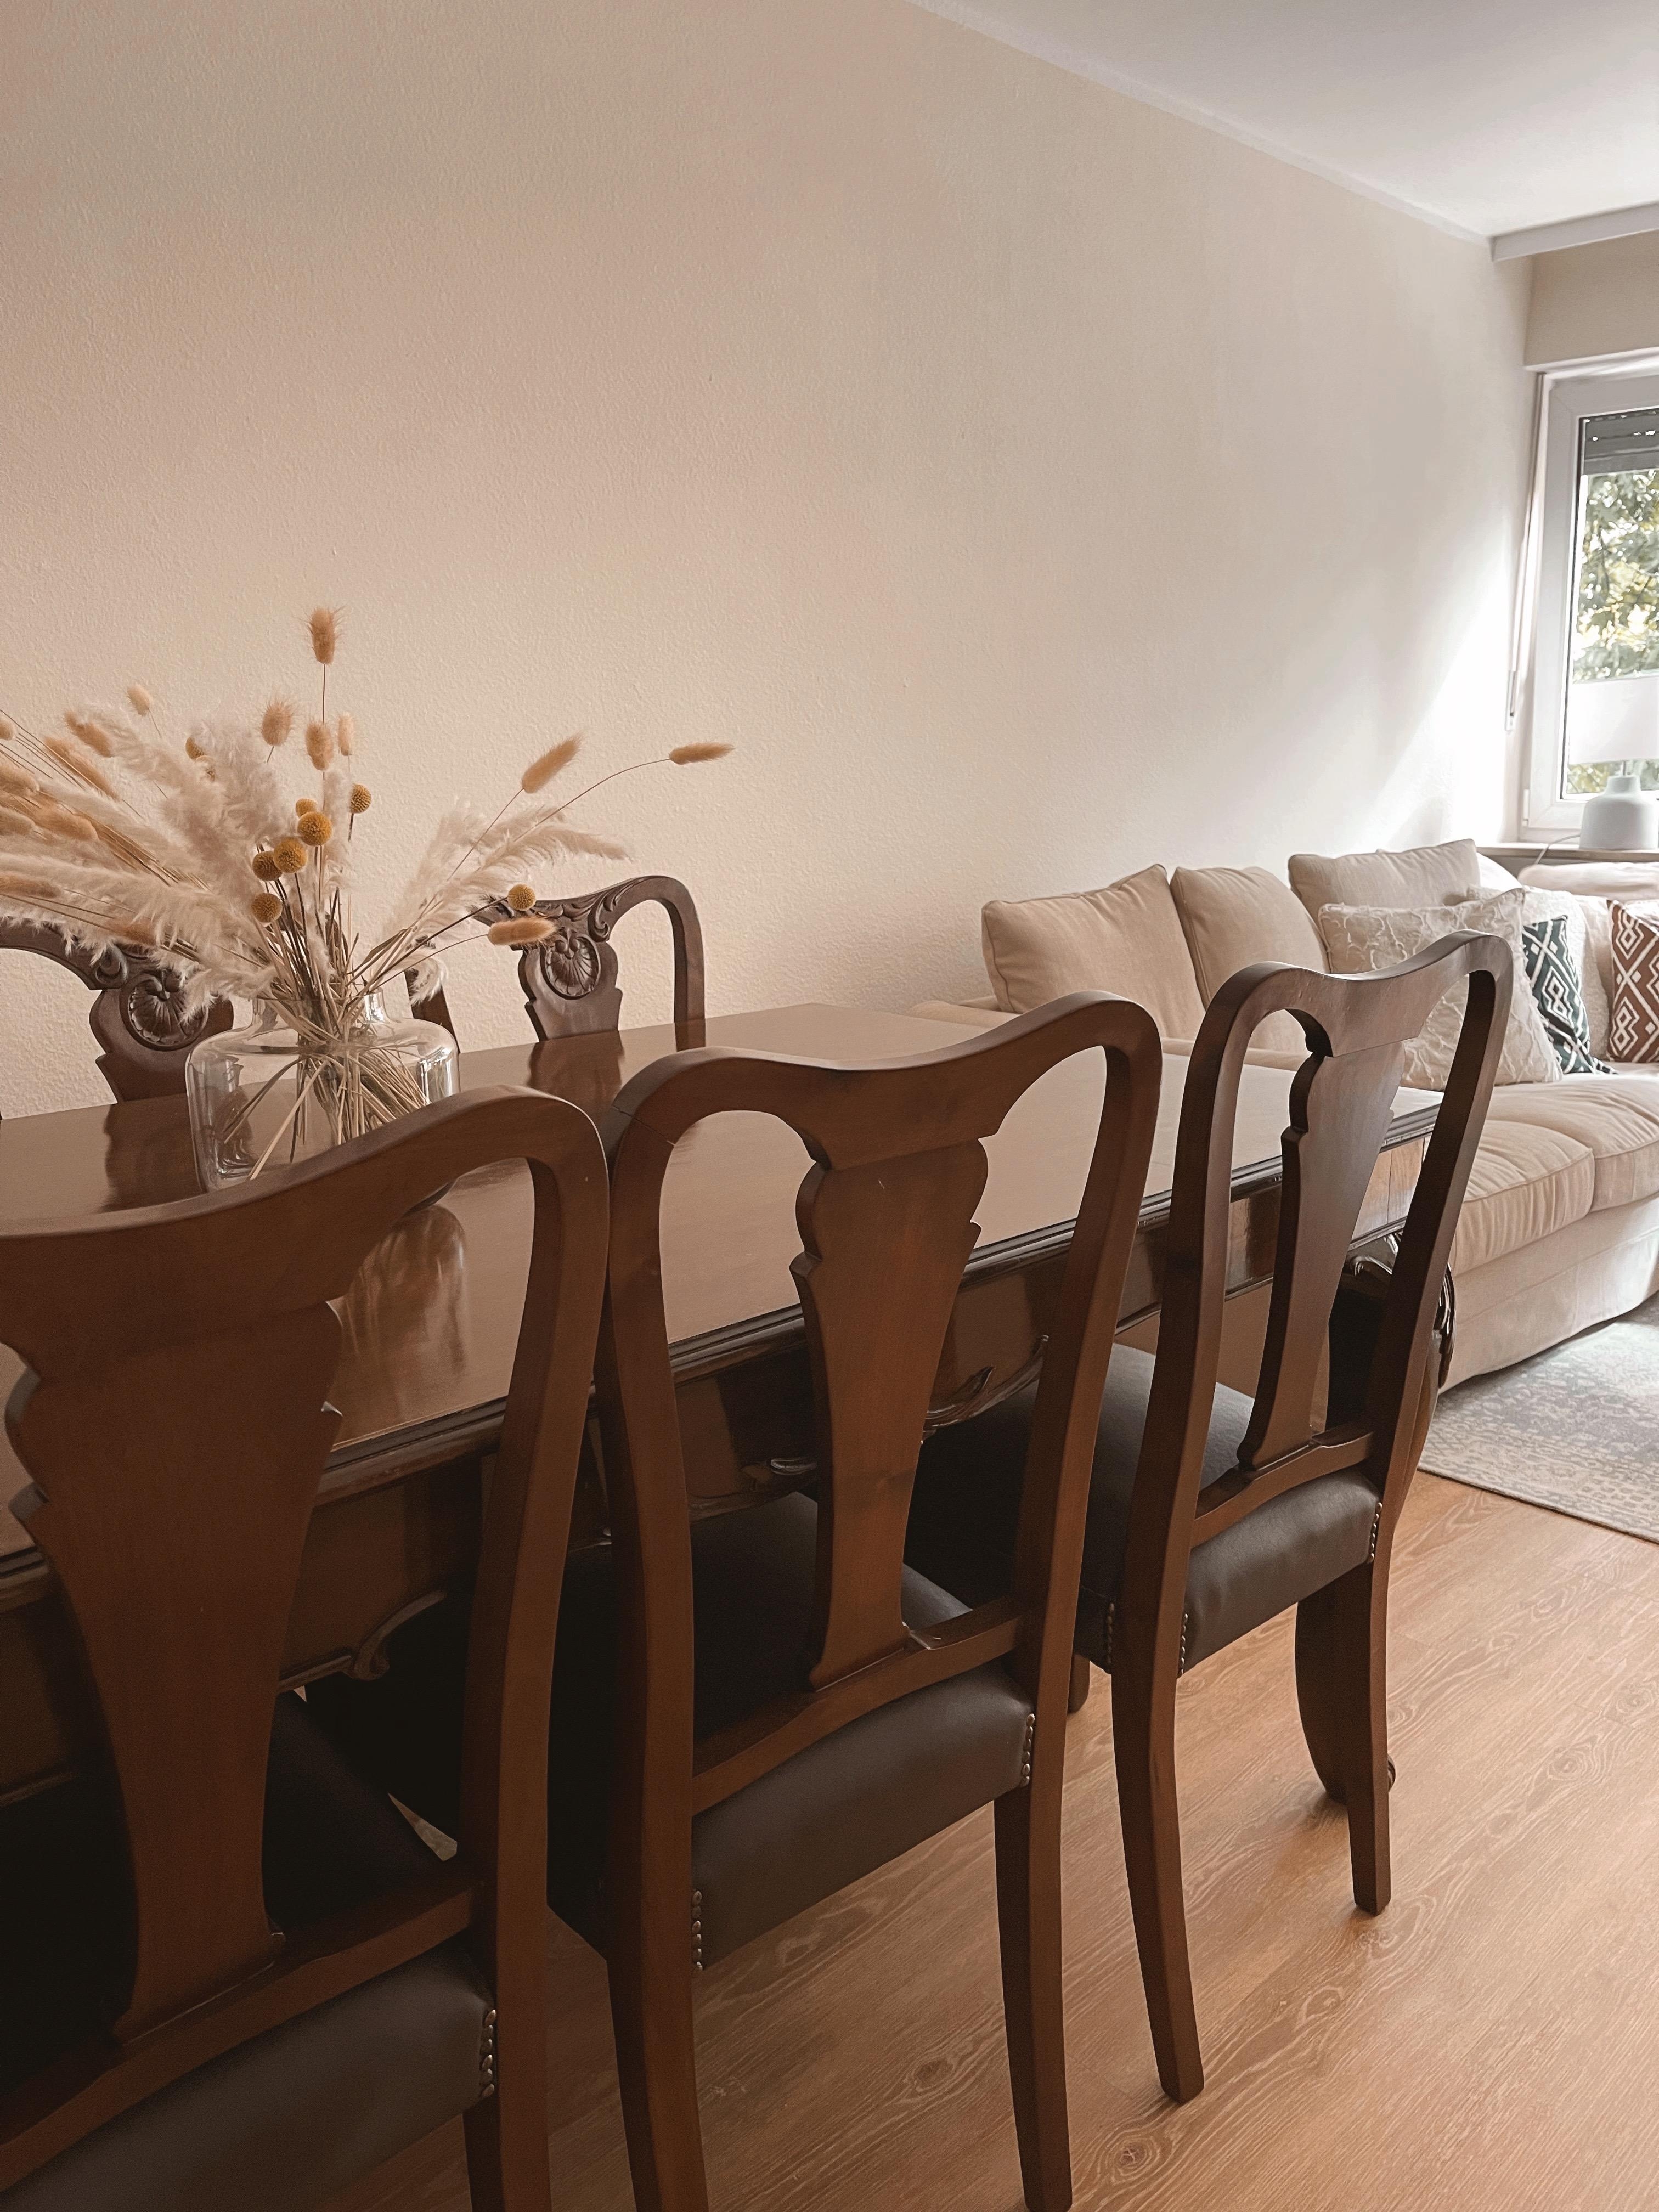 Wenn Omas Möbel ihren Platz in der neuen Wohnung bekommen ❤️
#vintage #beige #esstisch #klassisch #holz 